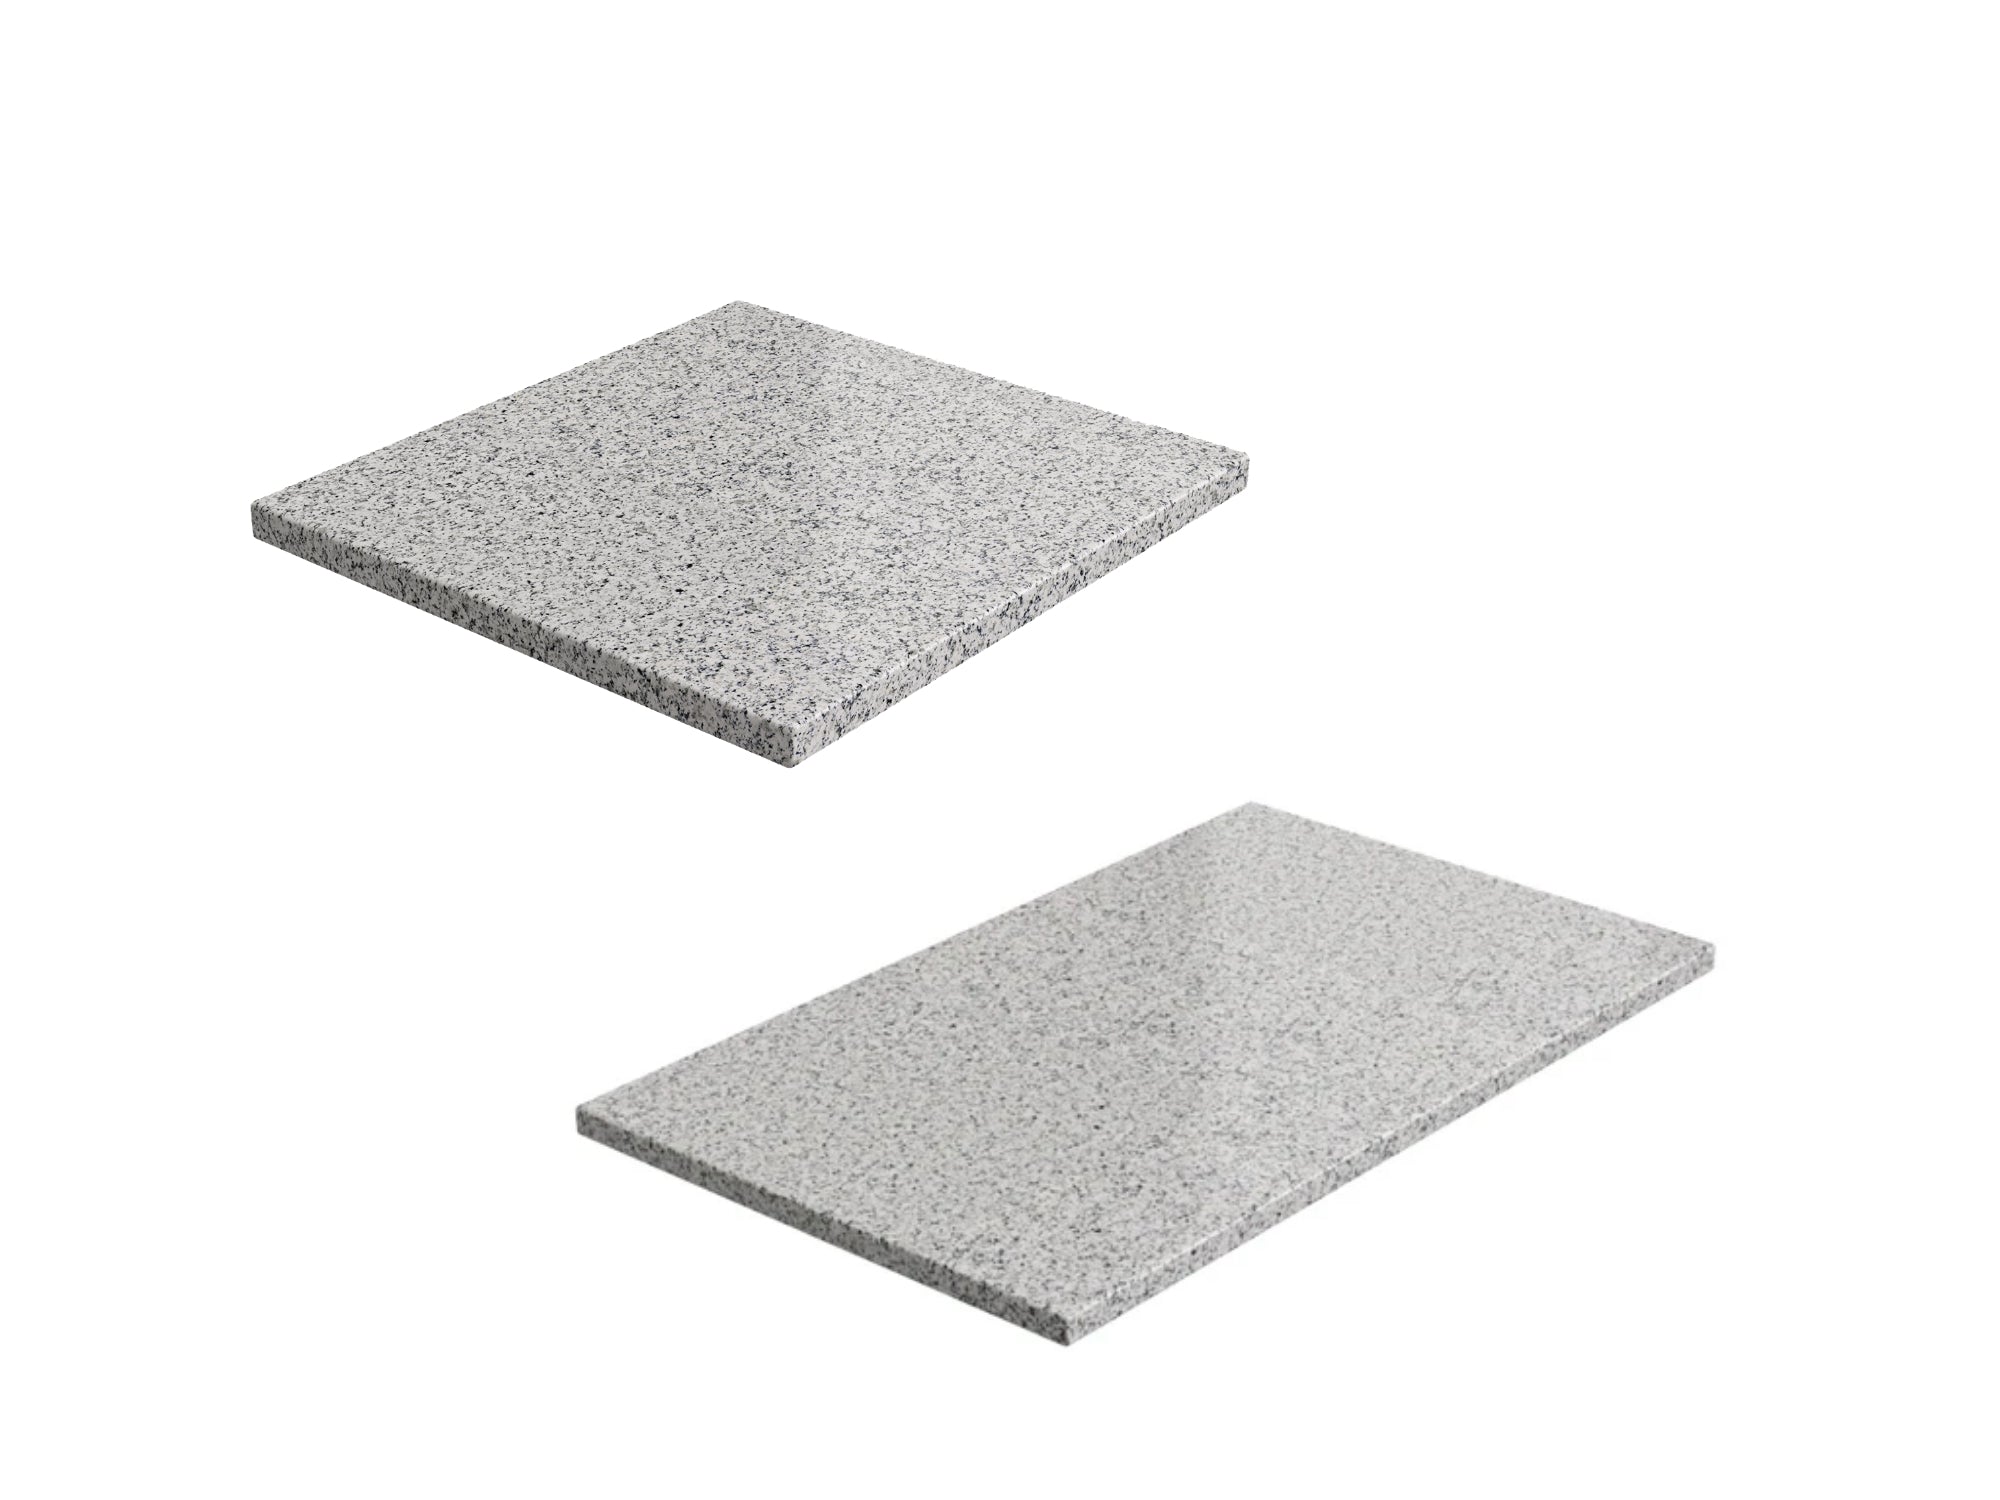 Home Bar Series Granite Countertop (1 x 21 in. Granite Countertop, 1 x 42 in. Granite Countertop)